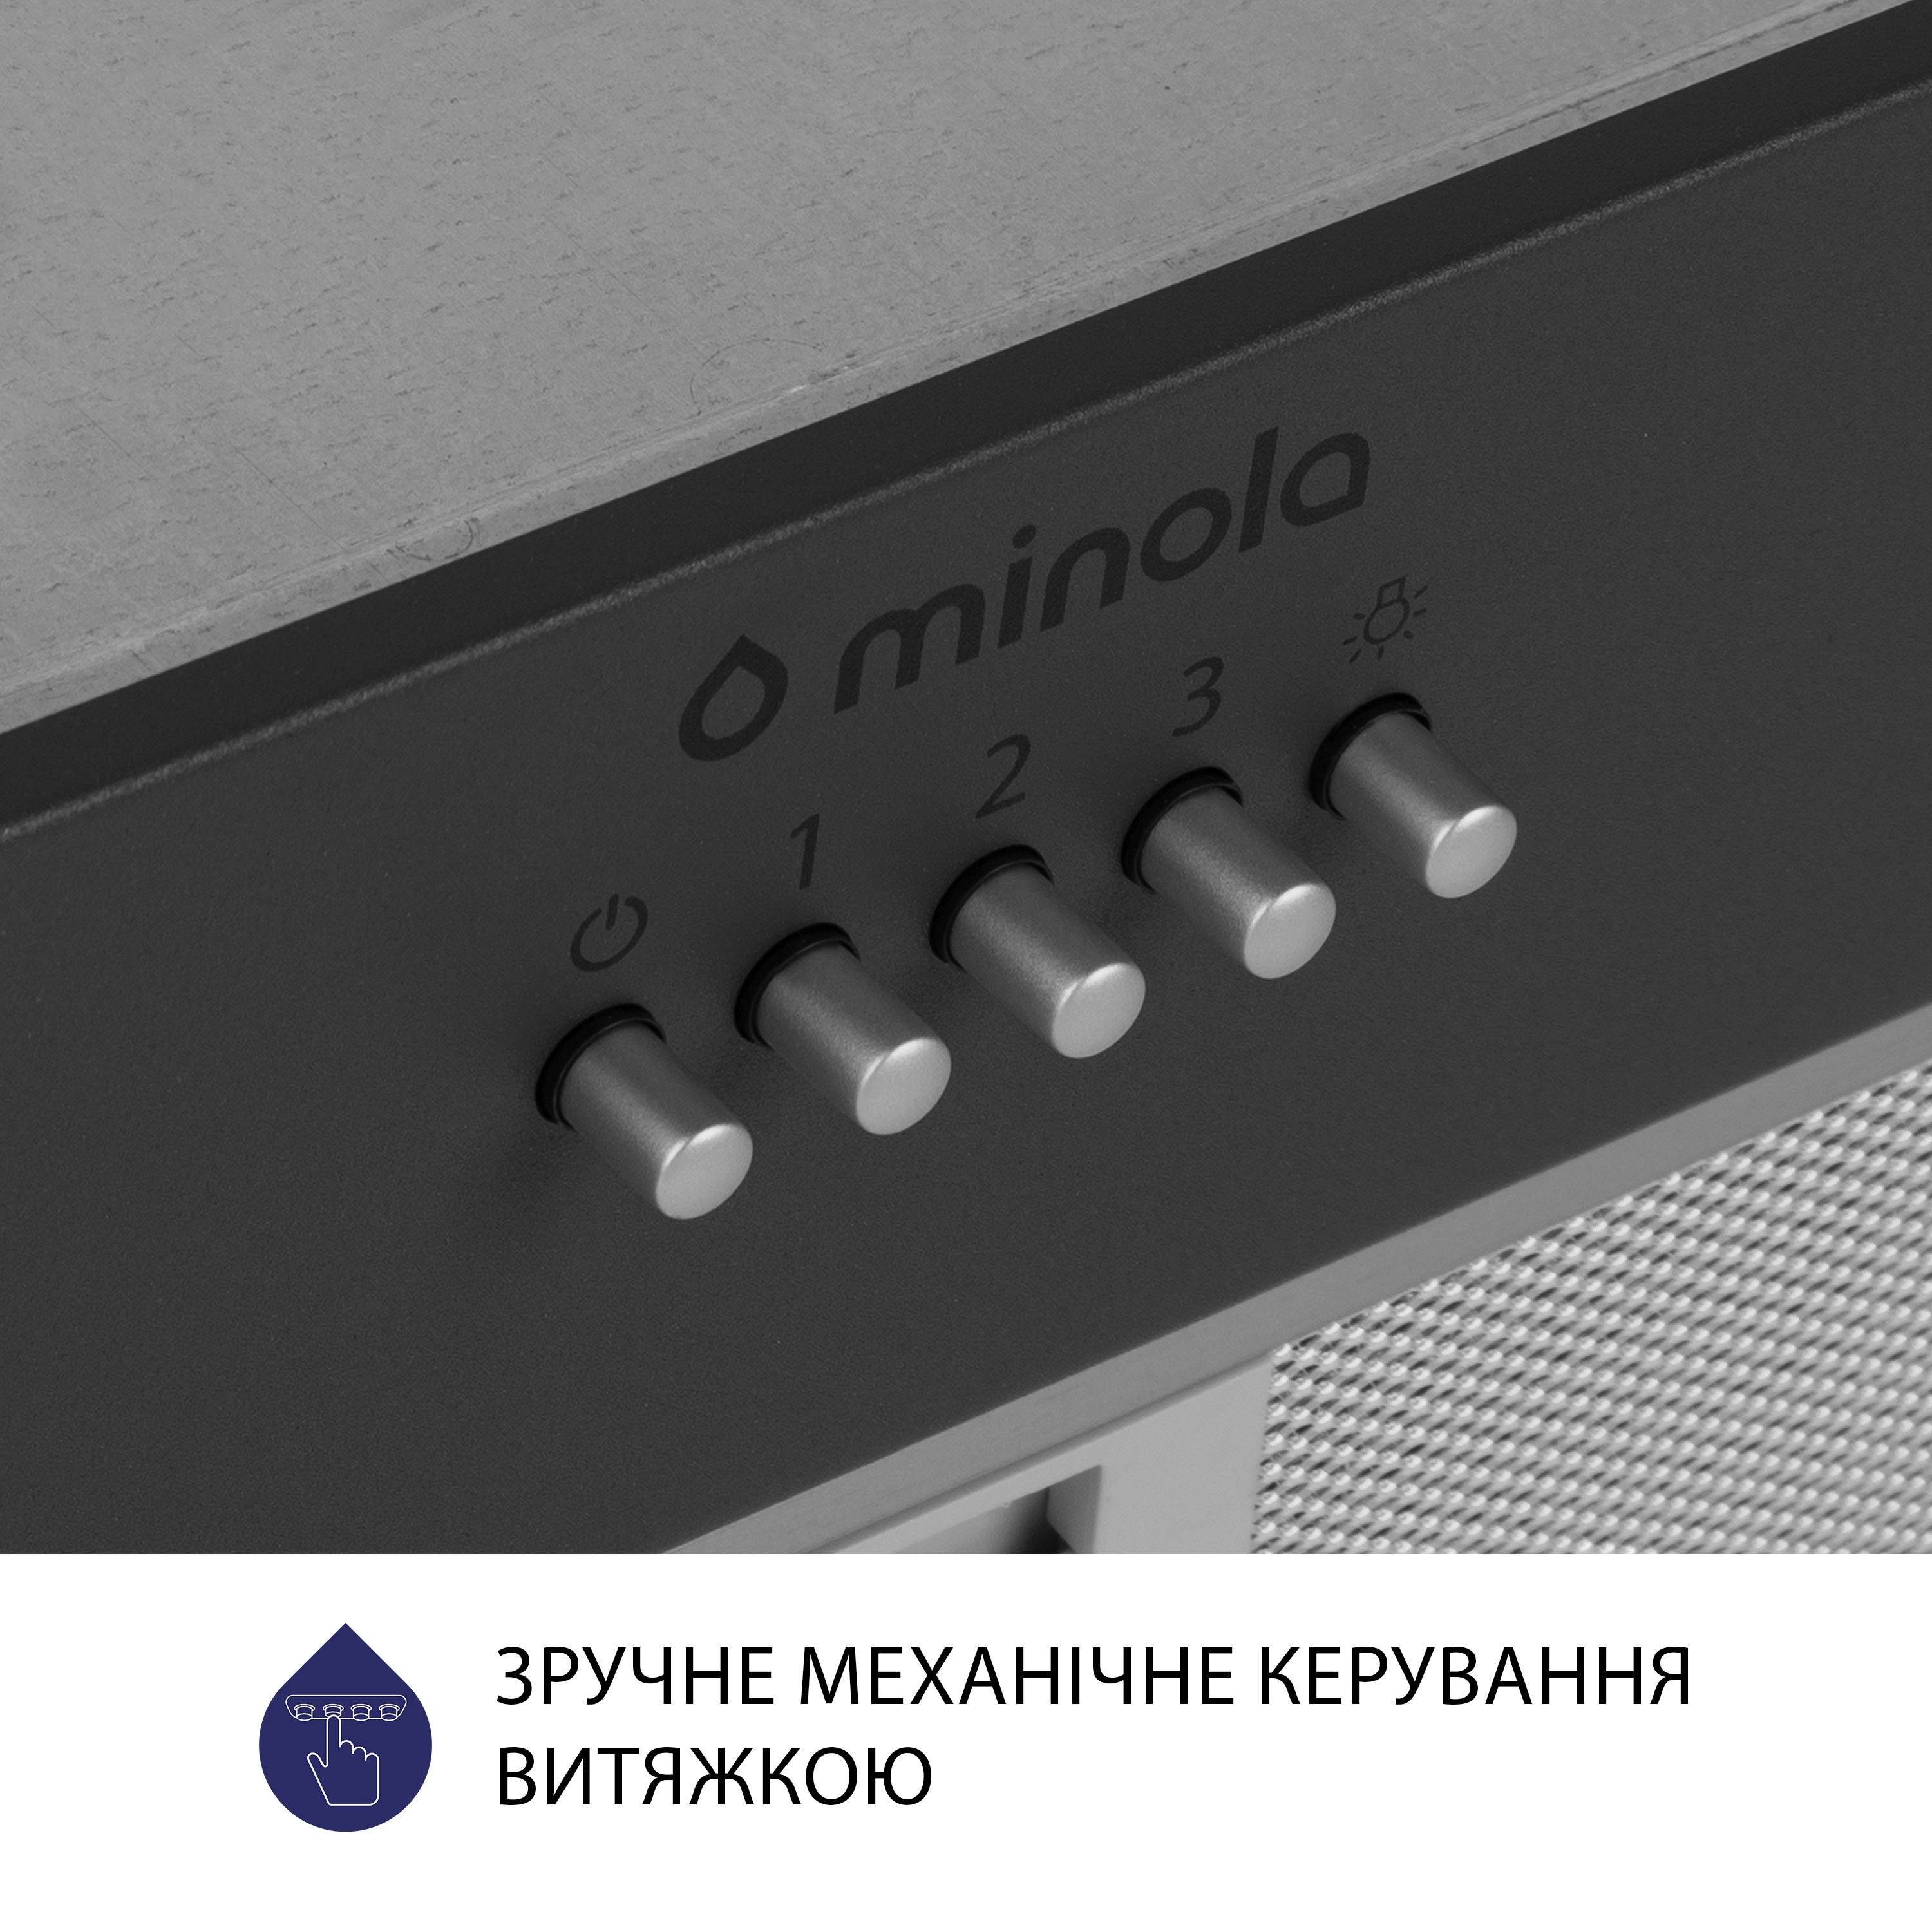 Витяжка кухонная полновстраиваемая Minola HBI 5204 GR 700 LED инструкция - изображение 6